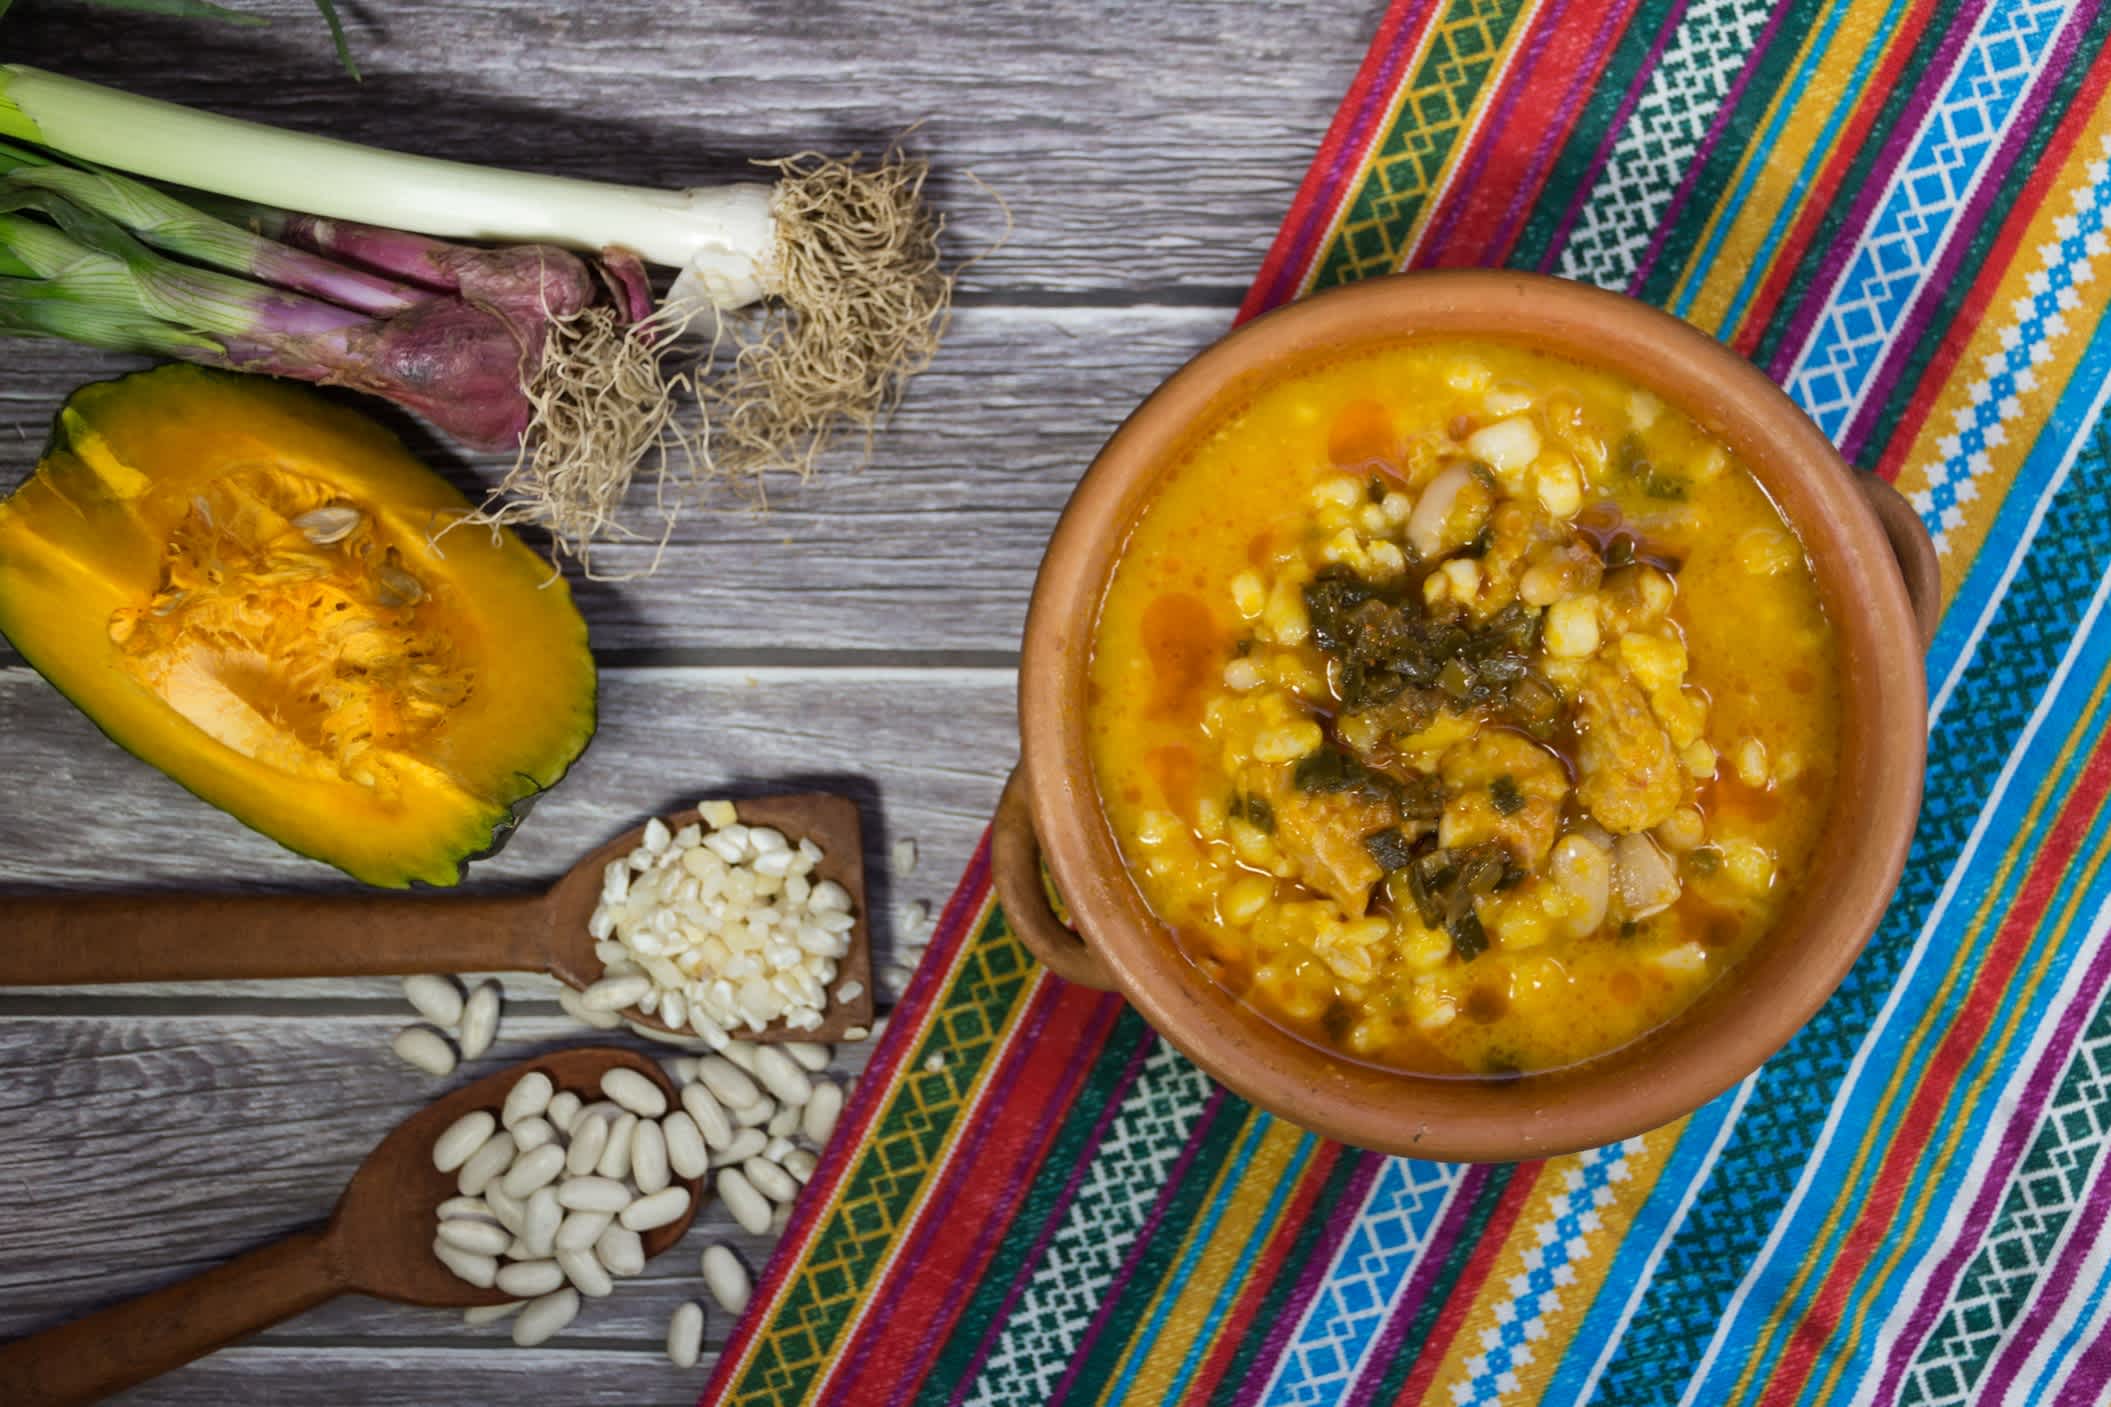 Plat locro du nord et ingrédients typiques de la célébration des fêtes nationales en Argentine. Gastronomie traditionnelle